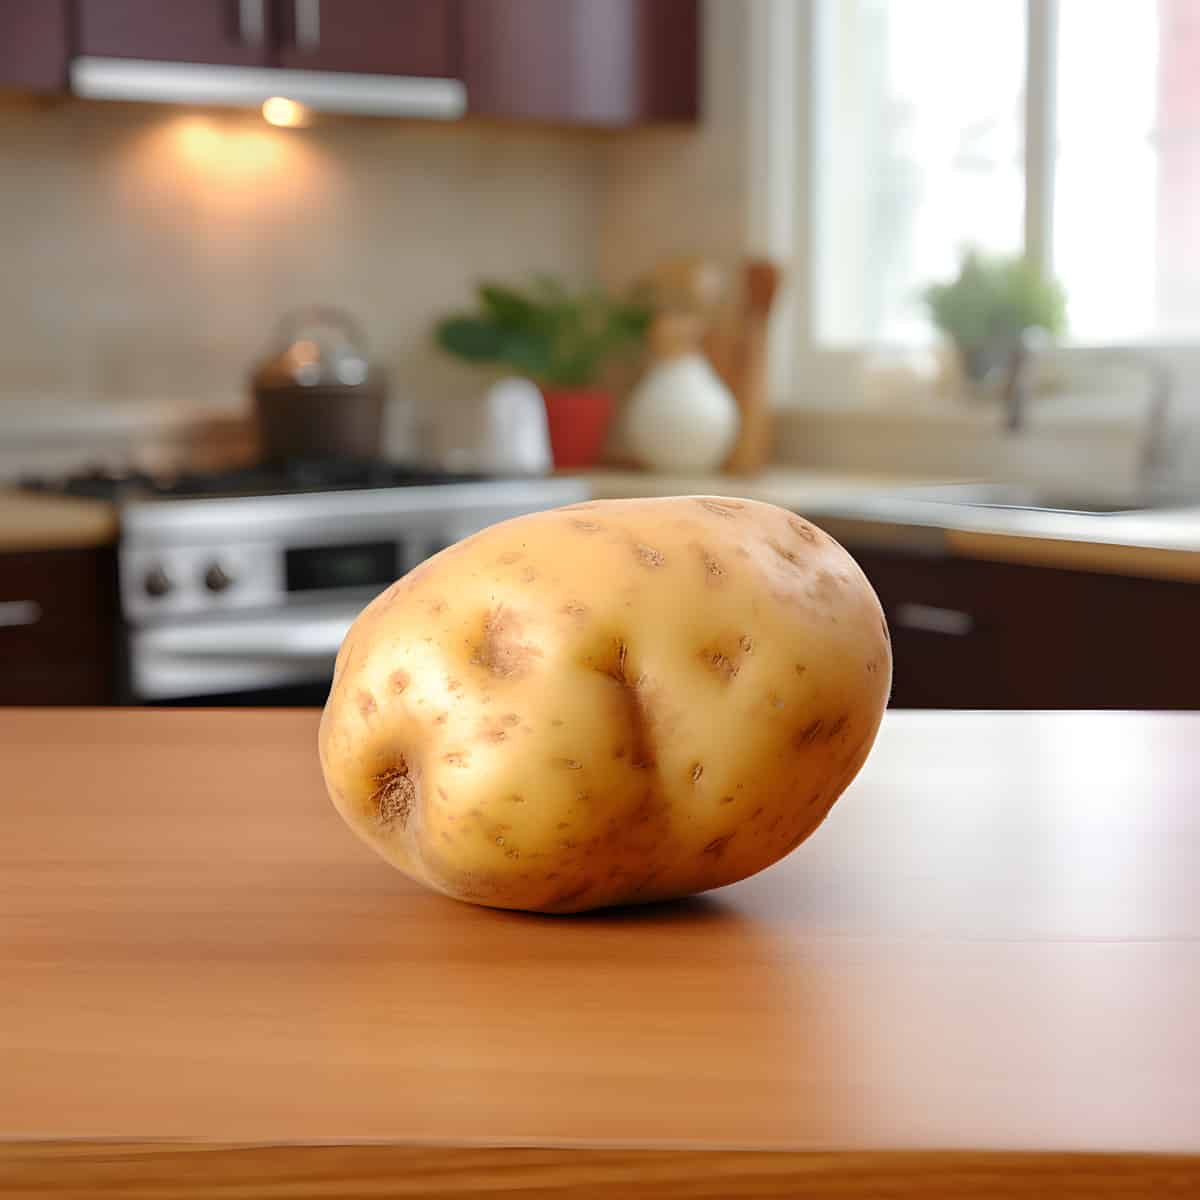 Fenton Potatoes on a kitchen counter